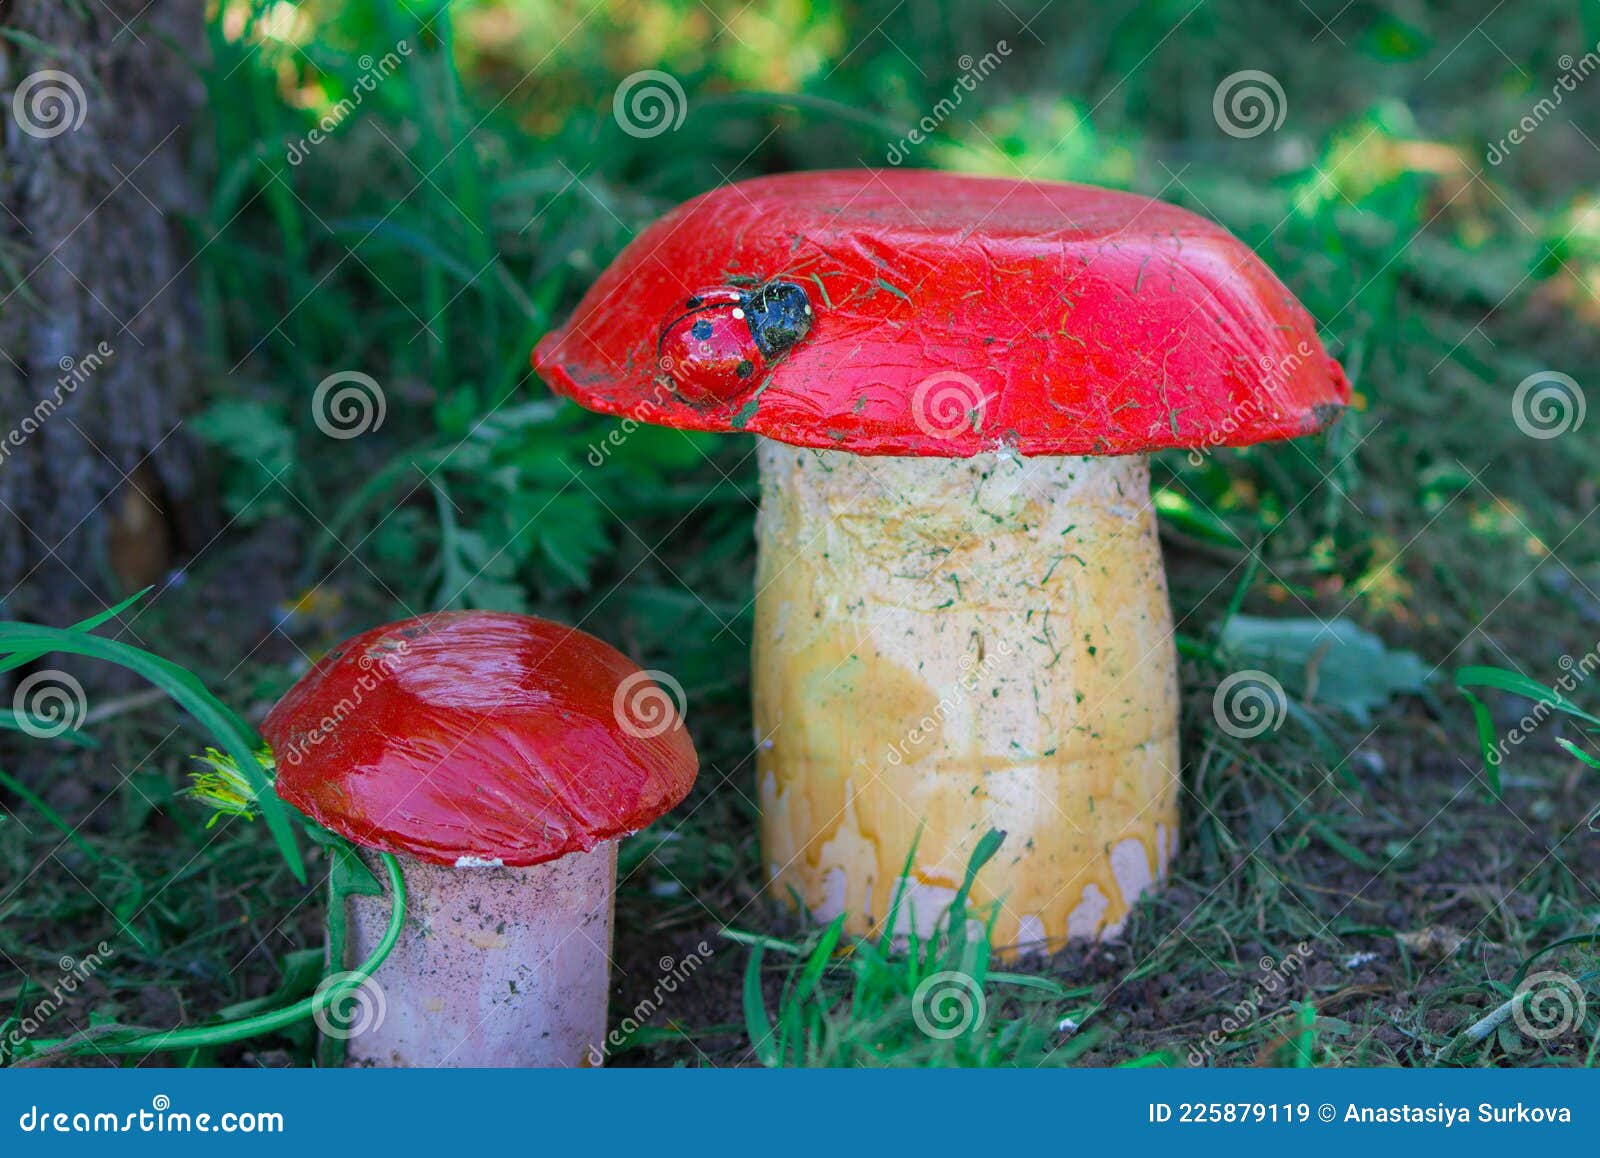 Как выбрать качественные садовые фигуры грибы